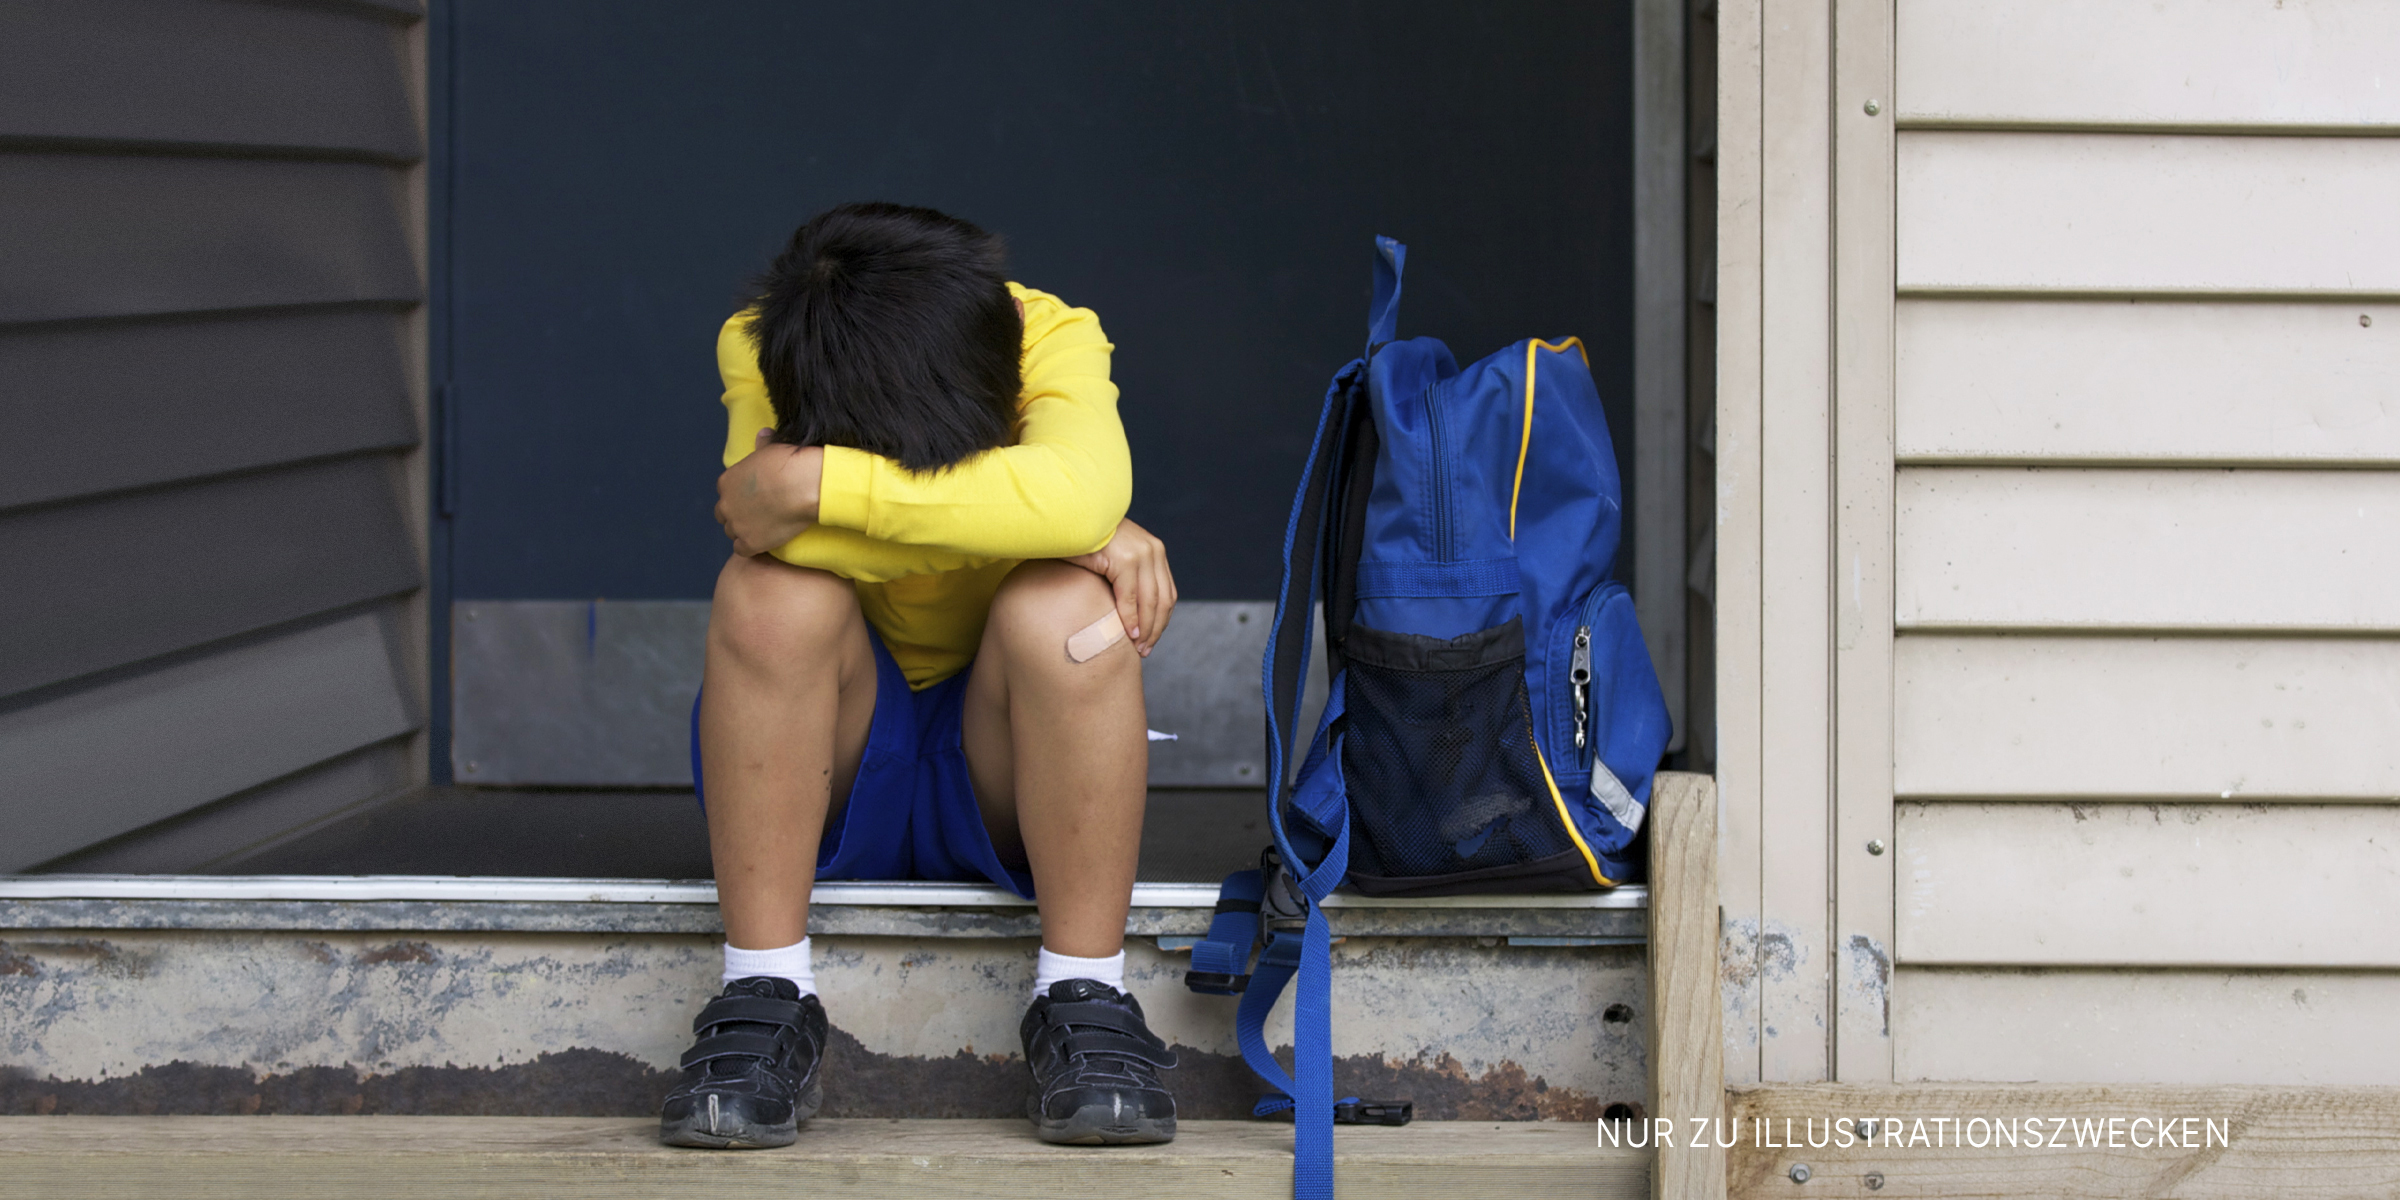 Junge sitzt auf einer Türschwelle | Quelle: Getty Images